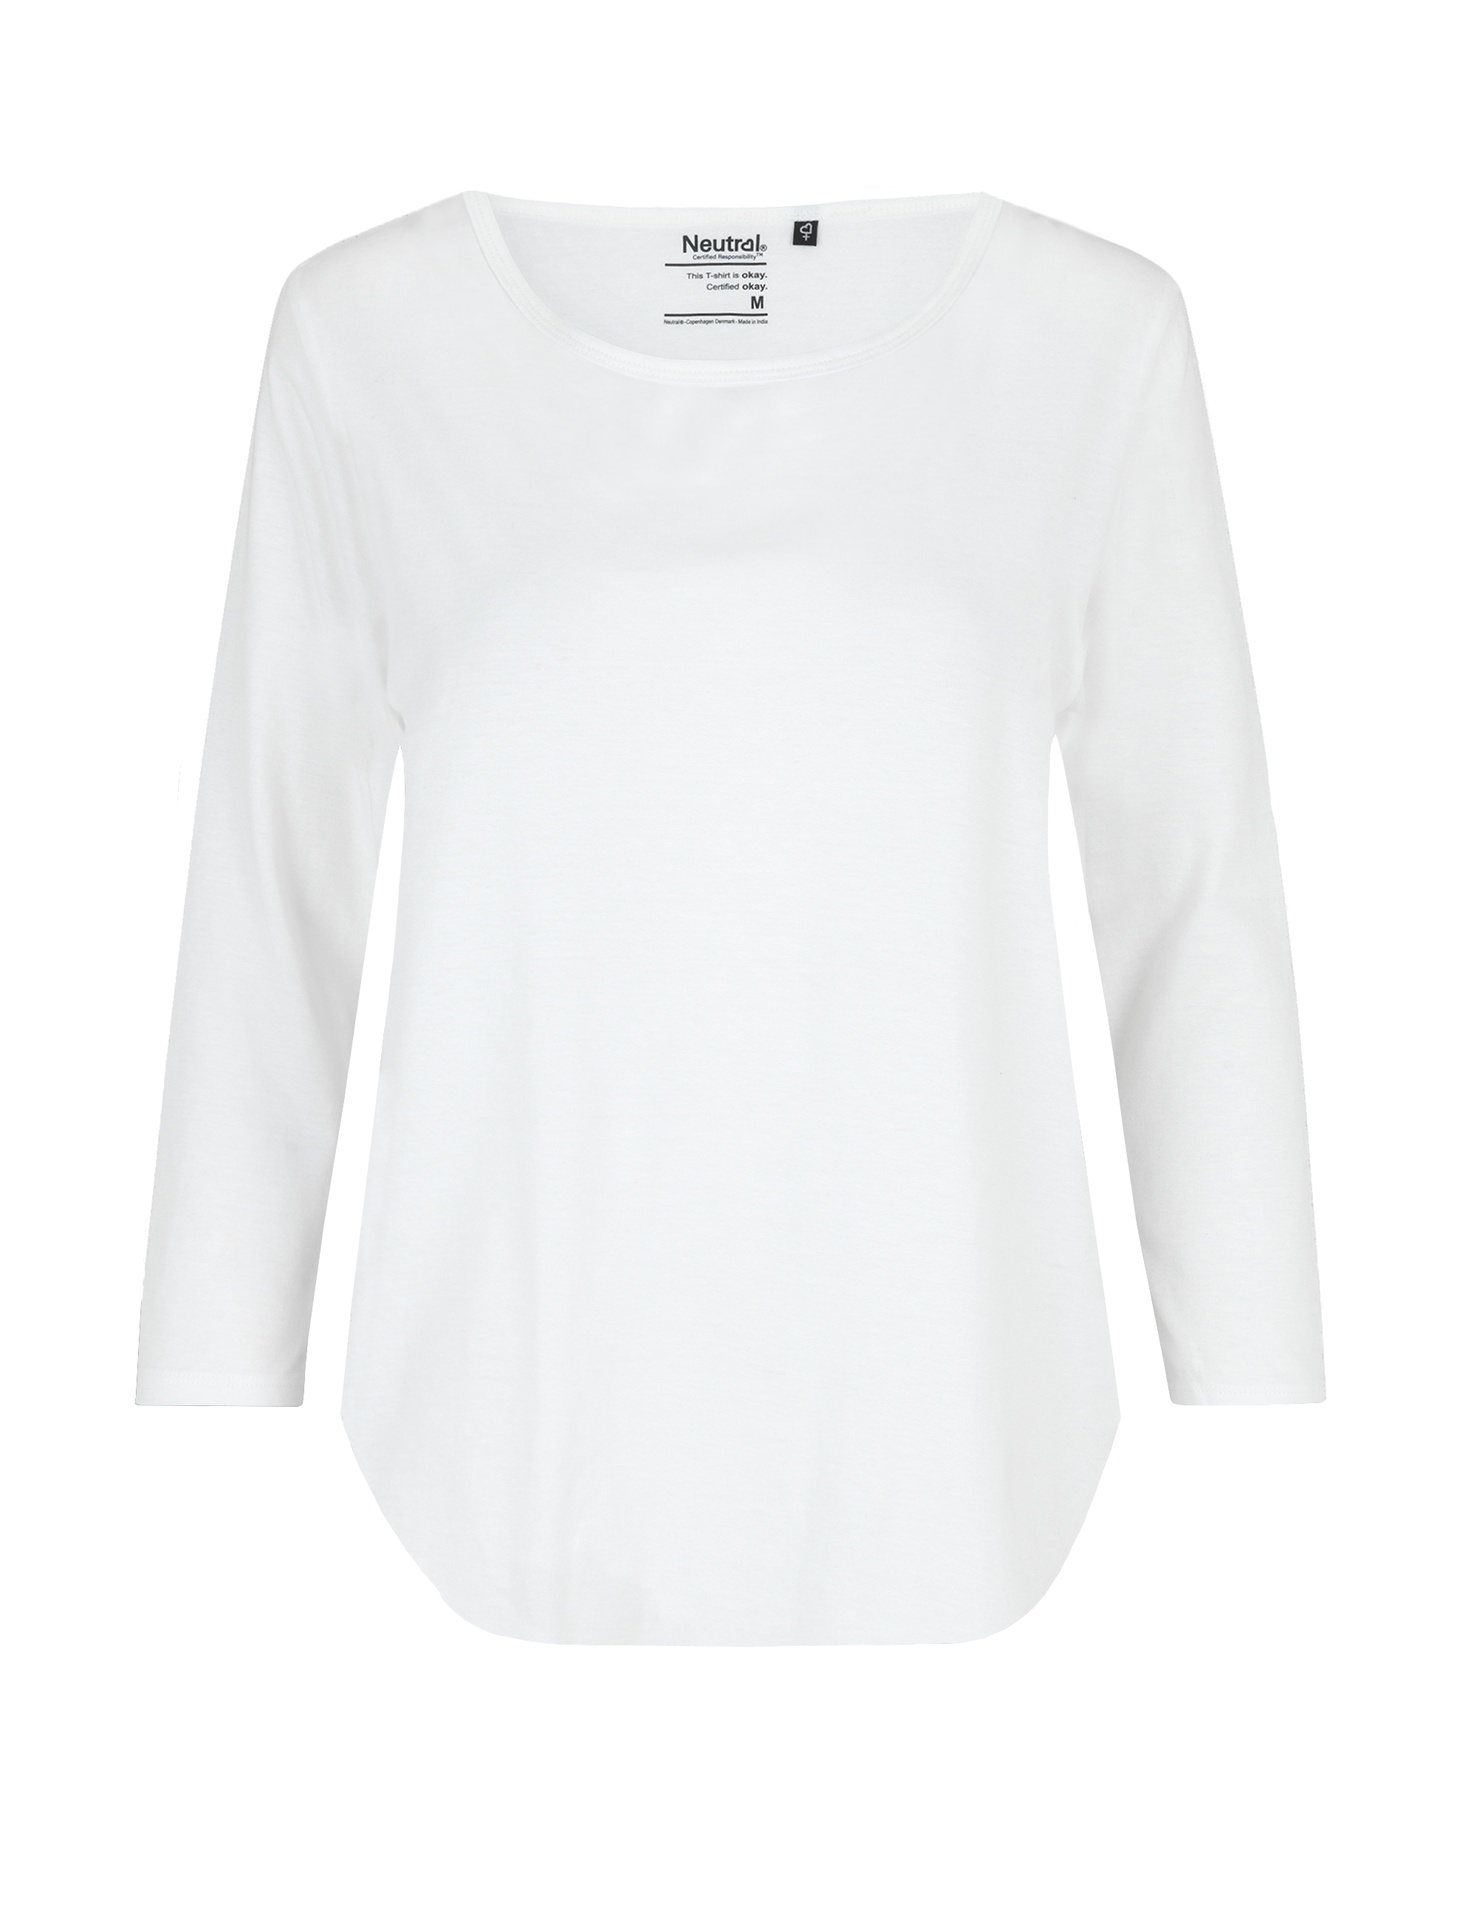 [PR/04524] Ladies Three Quarter Sleeve T-Shirt (White 01, 2XL)